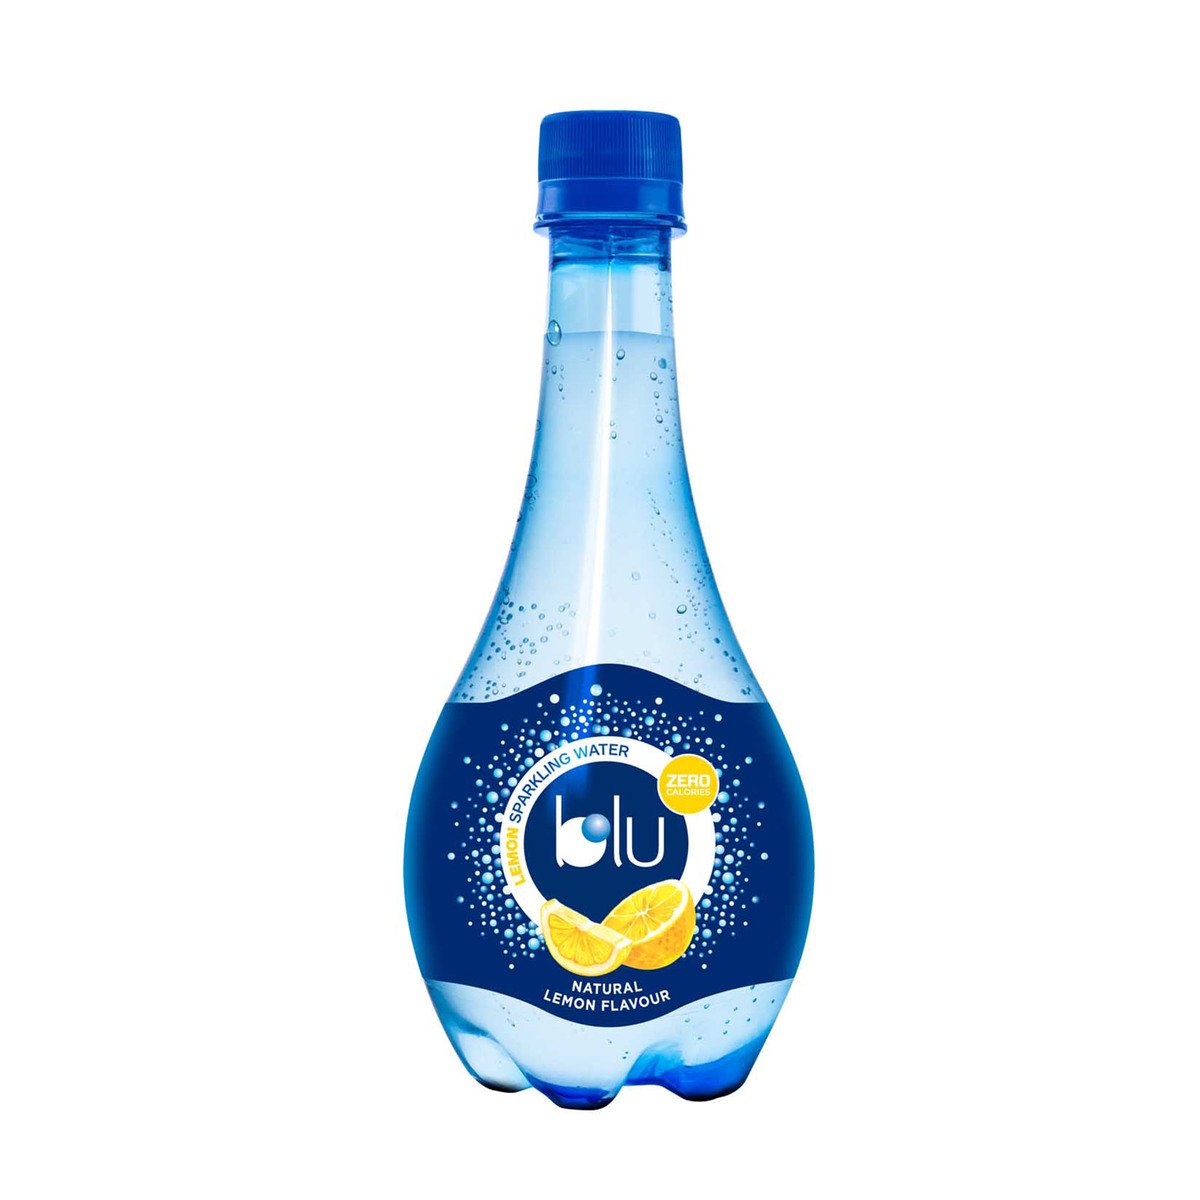 Buy Blu Sparkling Water Natural Lemon Flavour 250 ml Online at Best Price | Sparkling water | Lulu UAE in UAE